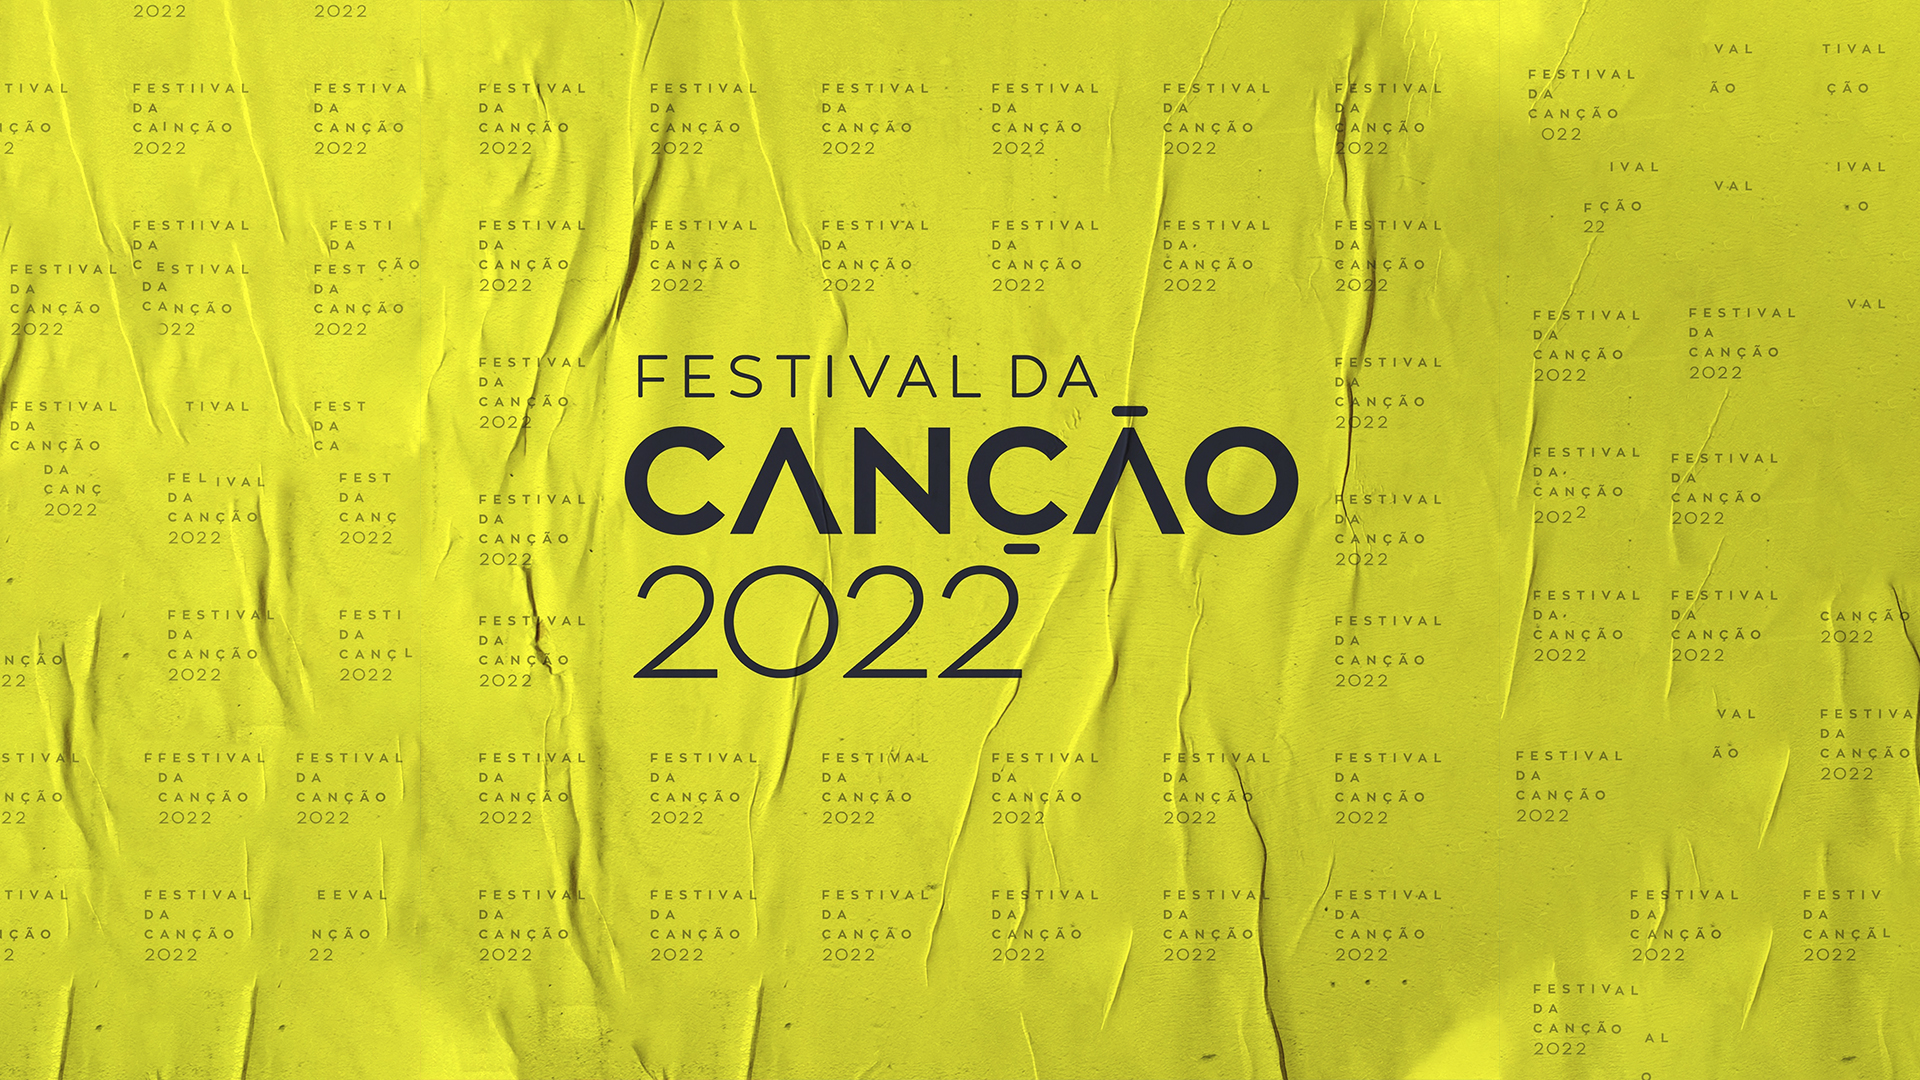 Portugal: These are the qualifiers of Festival da Canção Semi-Final 1